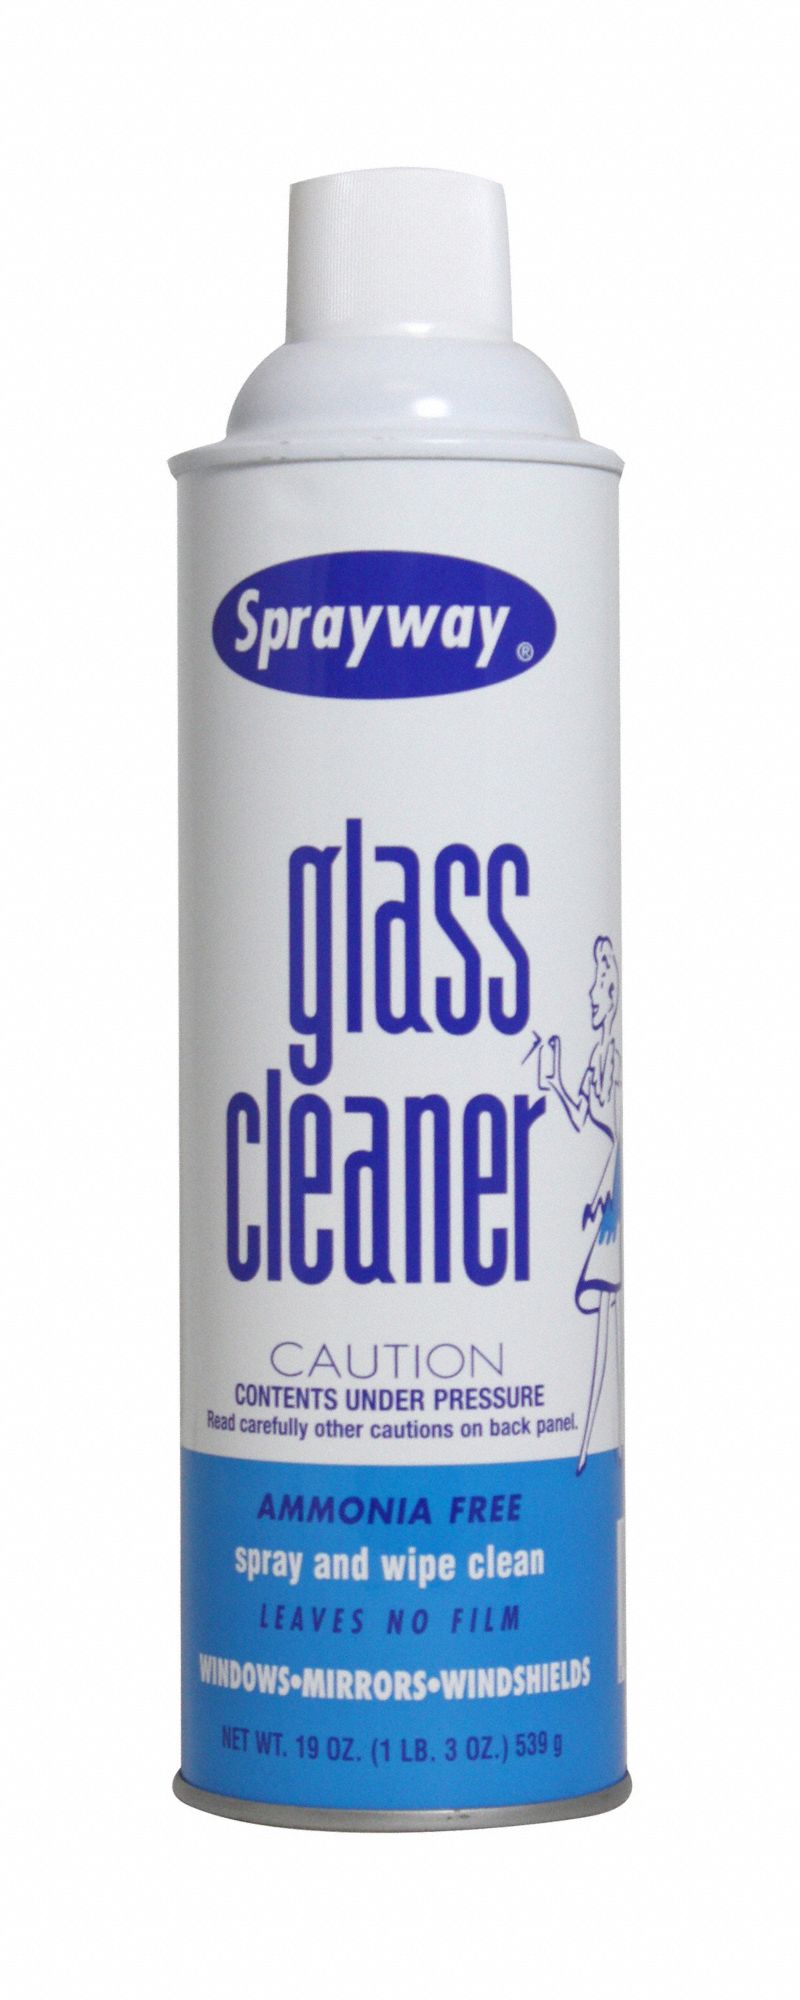 Glass Cleaner: Foam, Aerosol Spray Can, 20 oz, Ammonia Free, Fresh